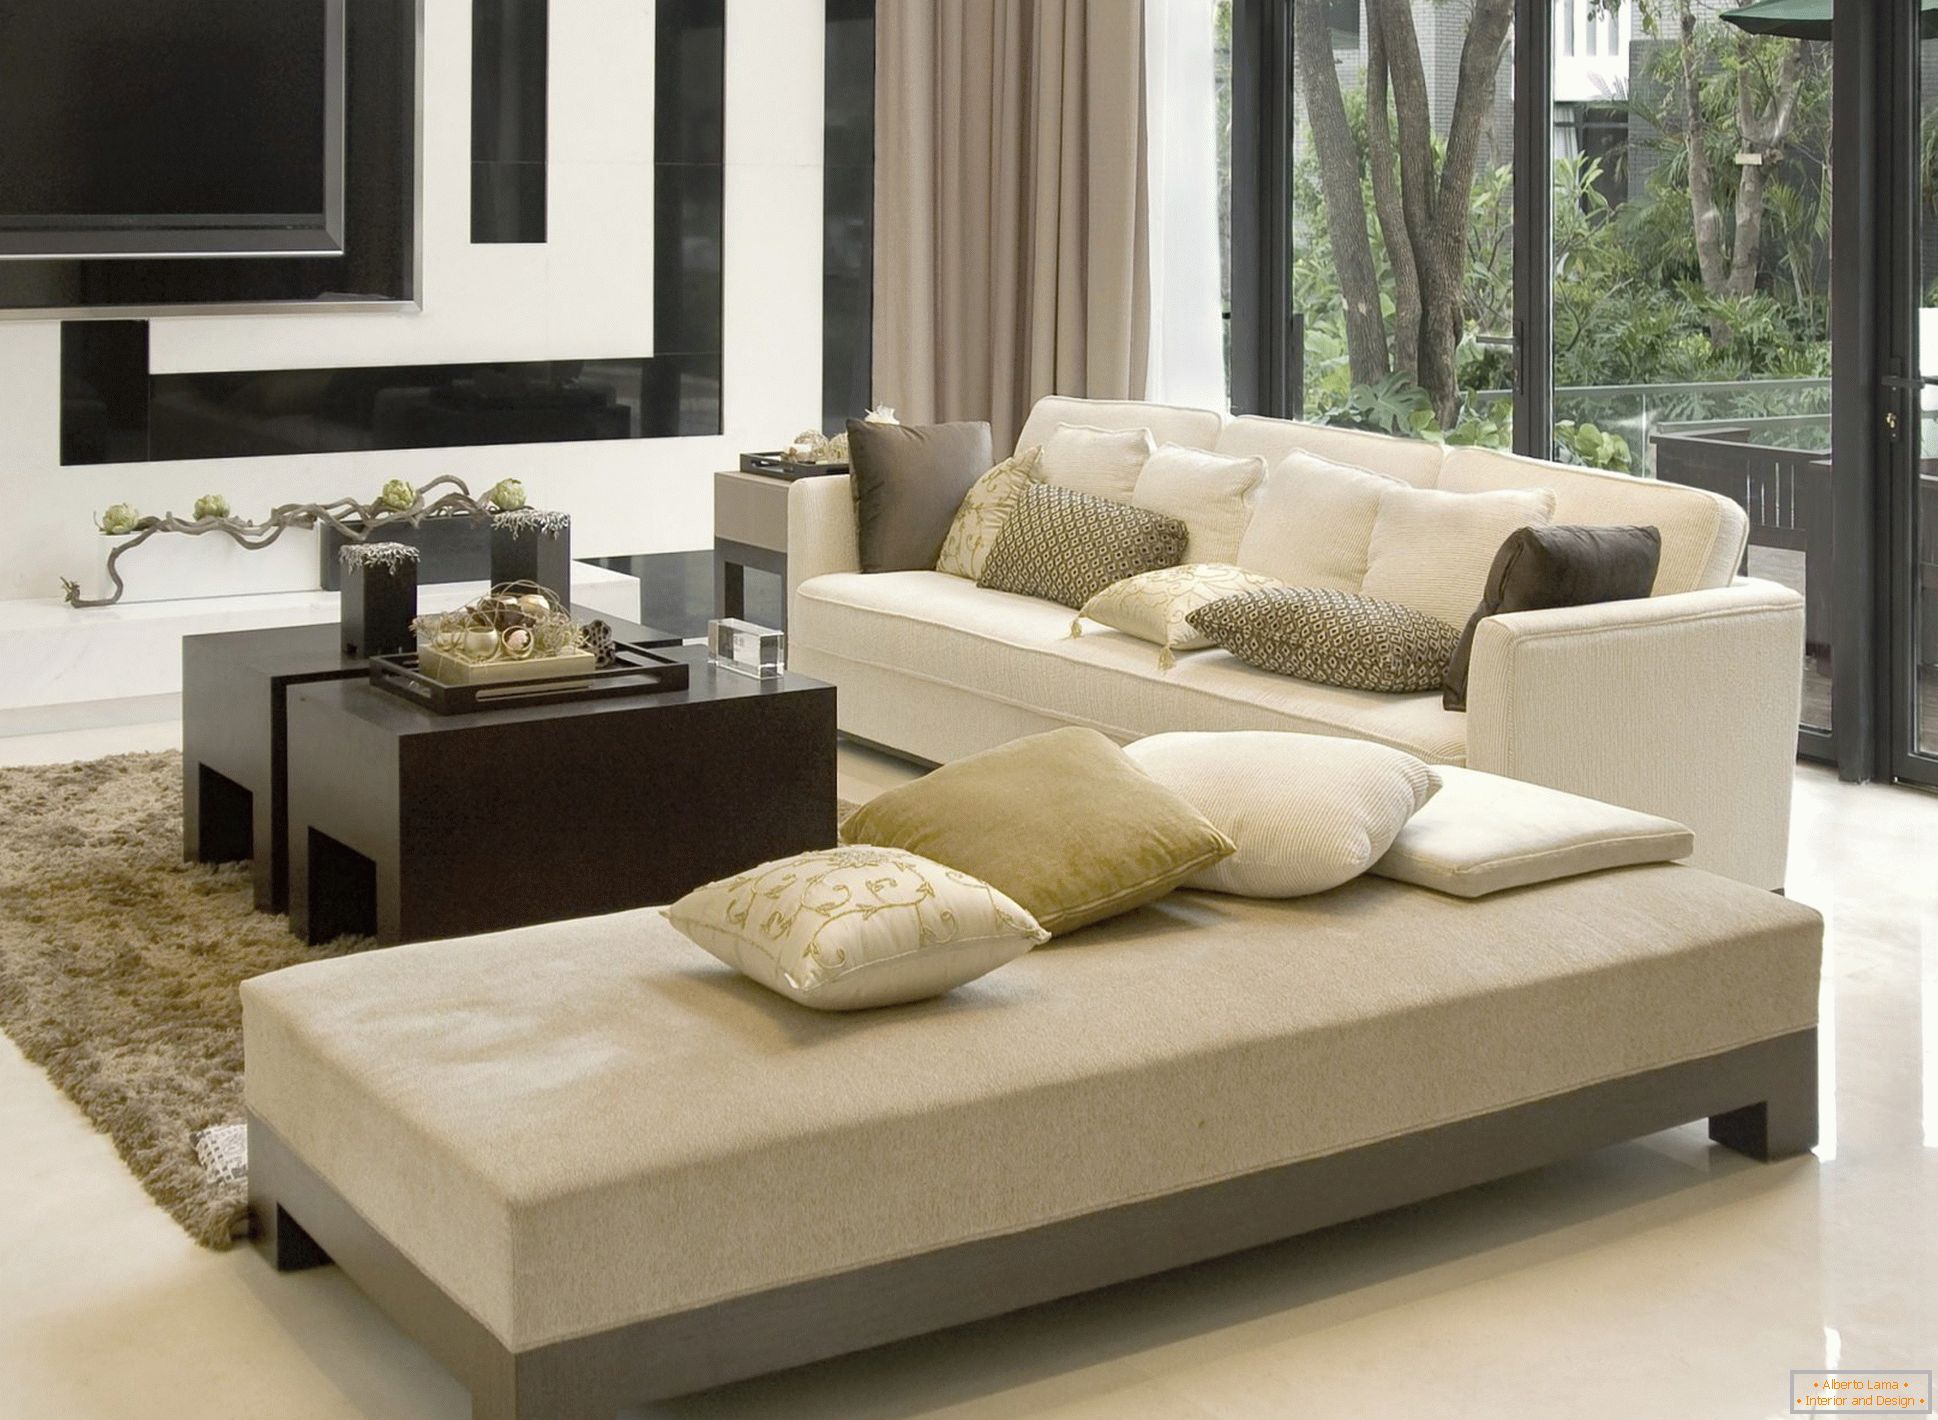 Cozy living room in beige tones